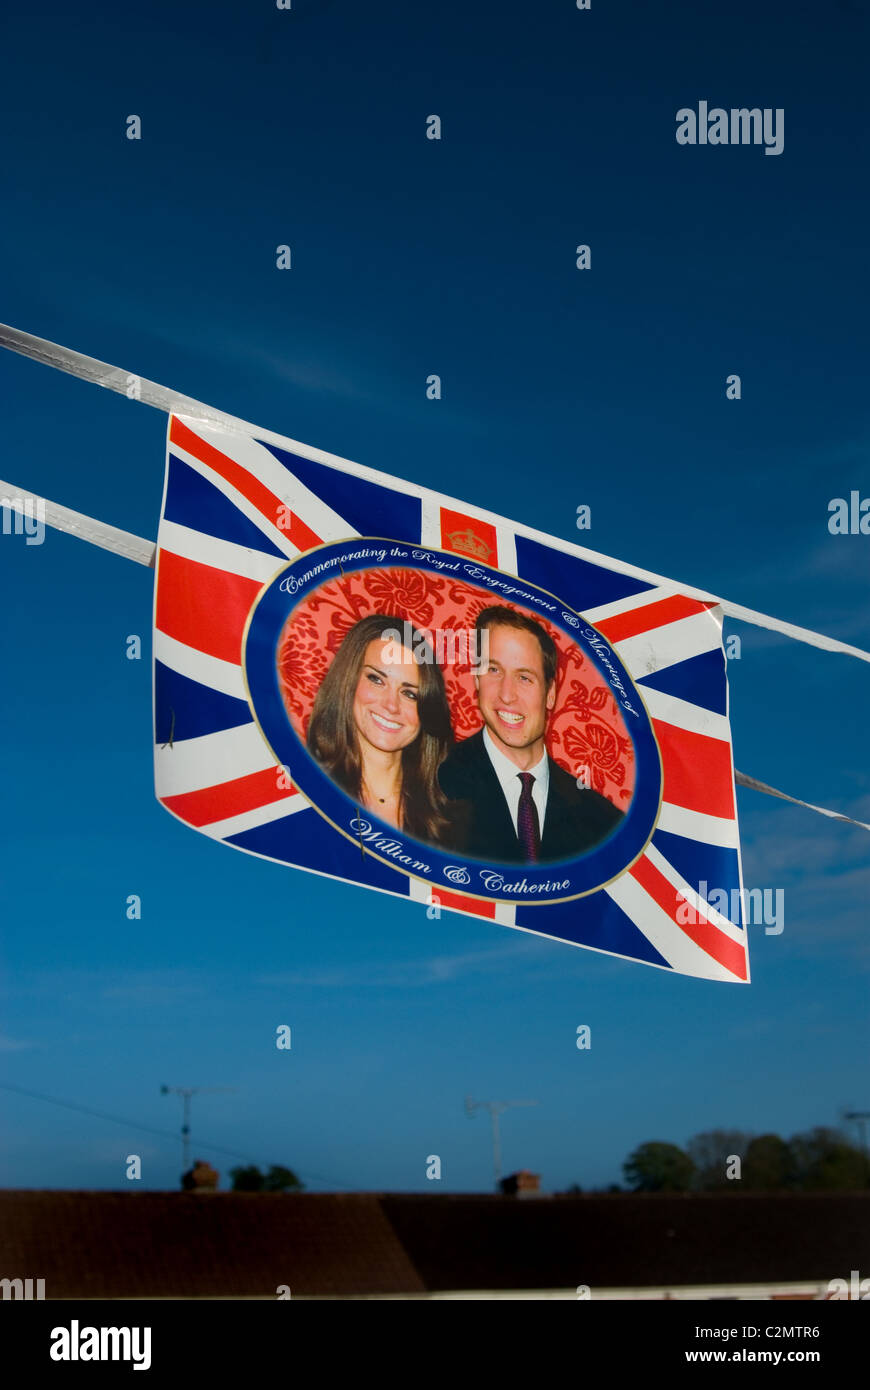 Mariage Royal Bunting, avec drapeaux Union Jack, drapeau britannique / UK et une photo de William et Kate. Banque D'Images